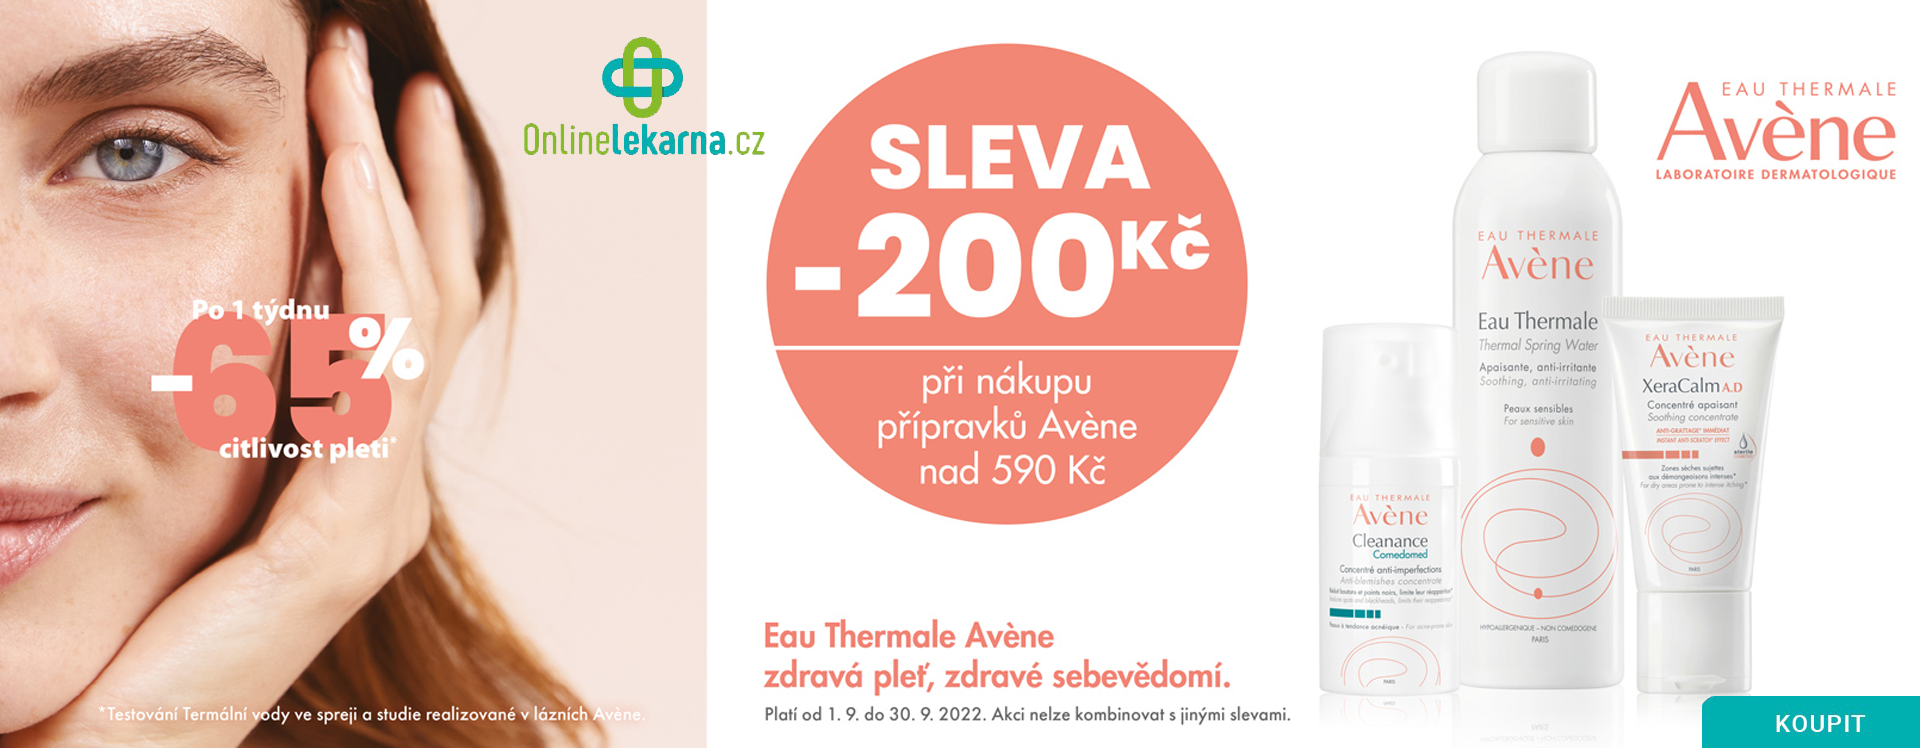 Onlinelekarna.cz |  AVENE Sleva 200 Kč